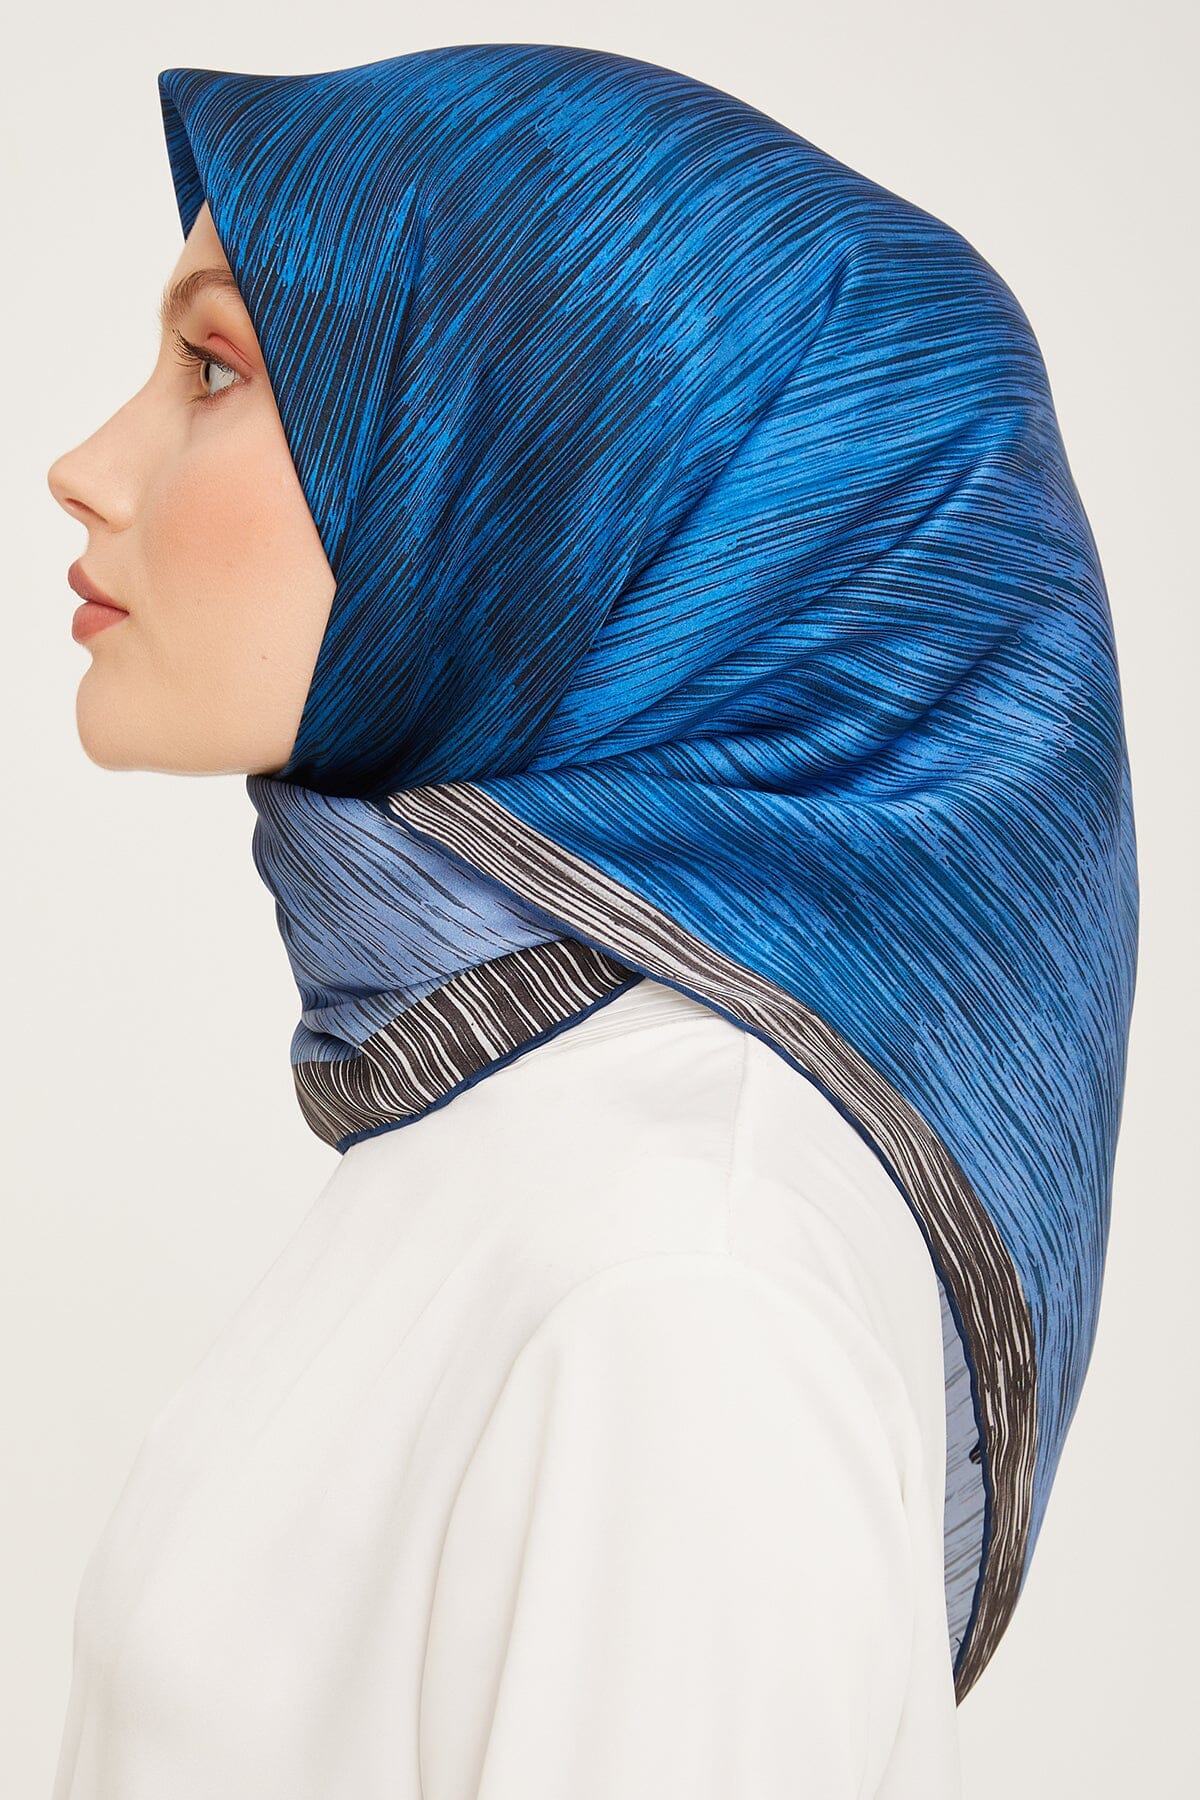 Armine Myers Silk Hair Wrap #36 Silk Hijabs,Armine Armine 